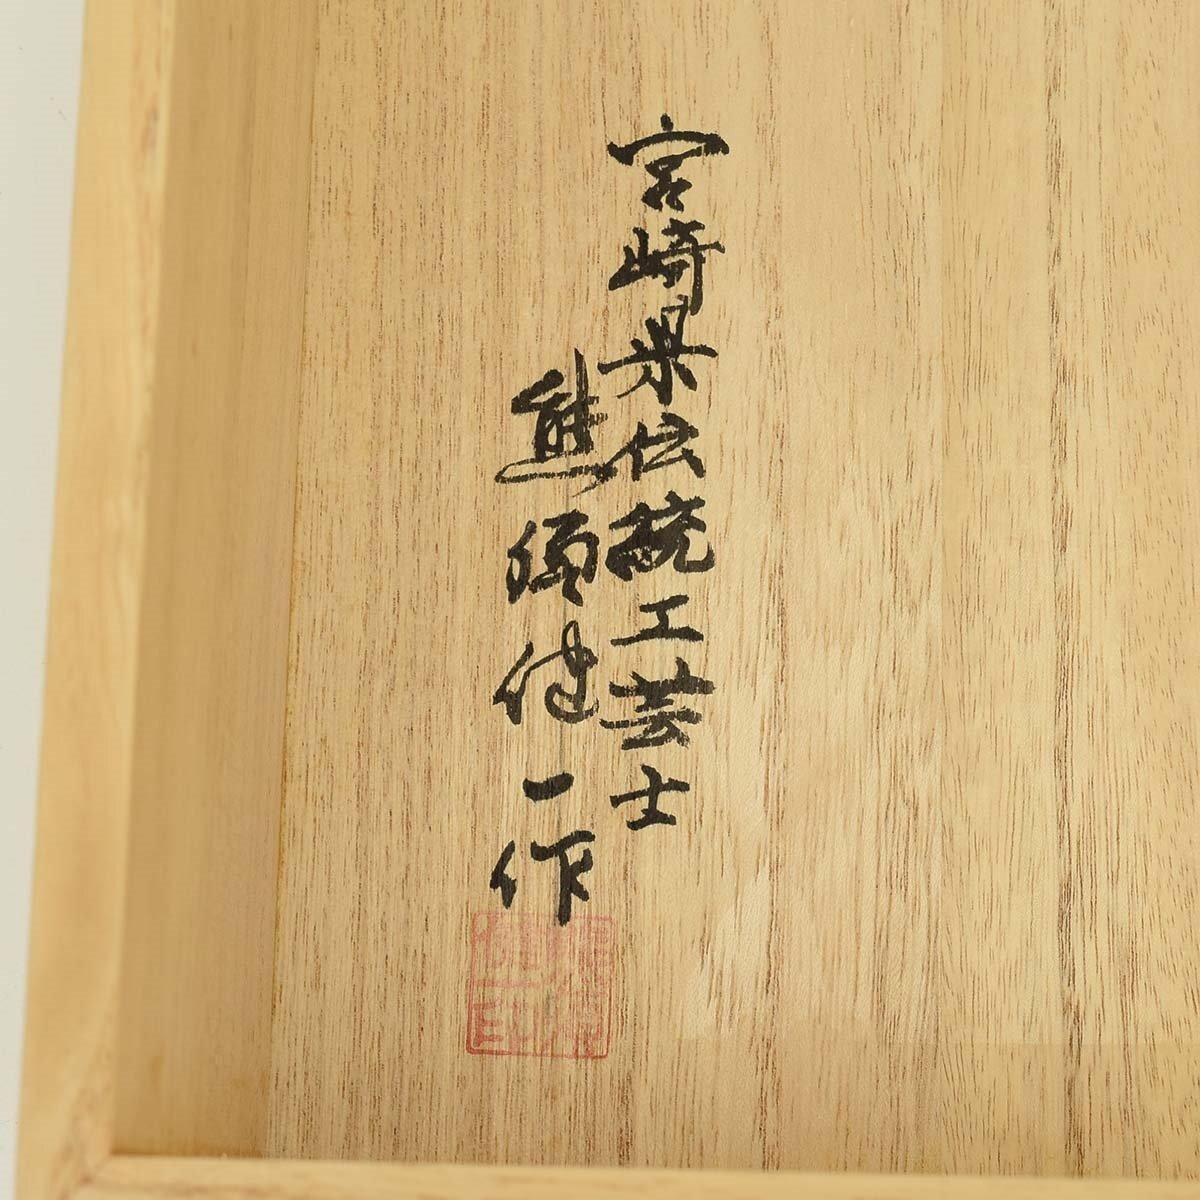 ★512201 将棋盤 駒台付き 宮崎県伝統工芸士 熊須健一作 署名盤覆の画像9